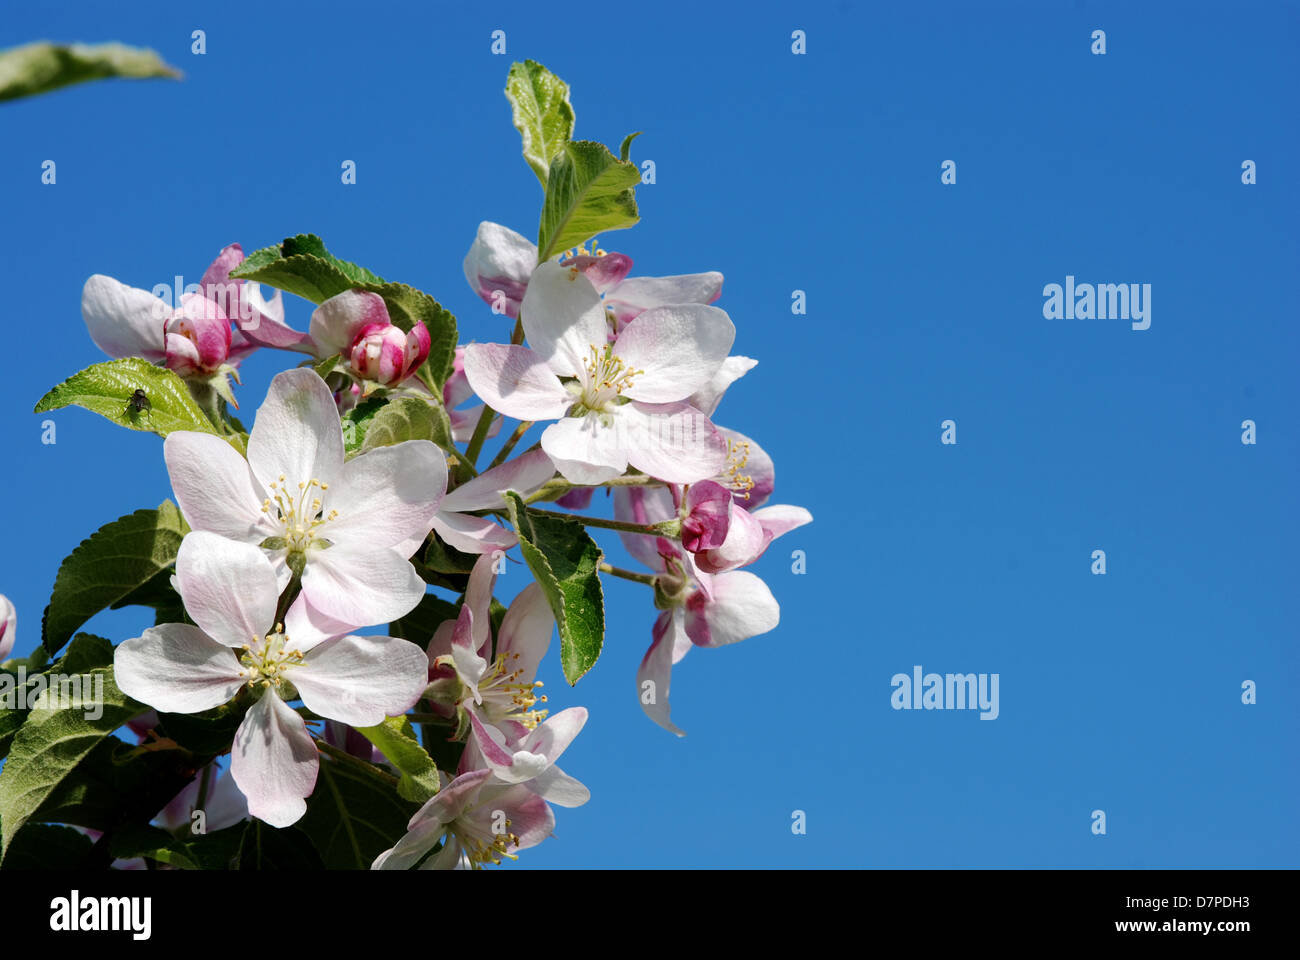 Apple Blossom fiore del melo in vista ravvicinata, Apfelbluete, Bluete des Apfelbaumes in Nahansicht Foto Stock